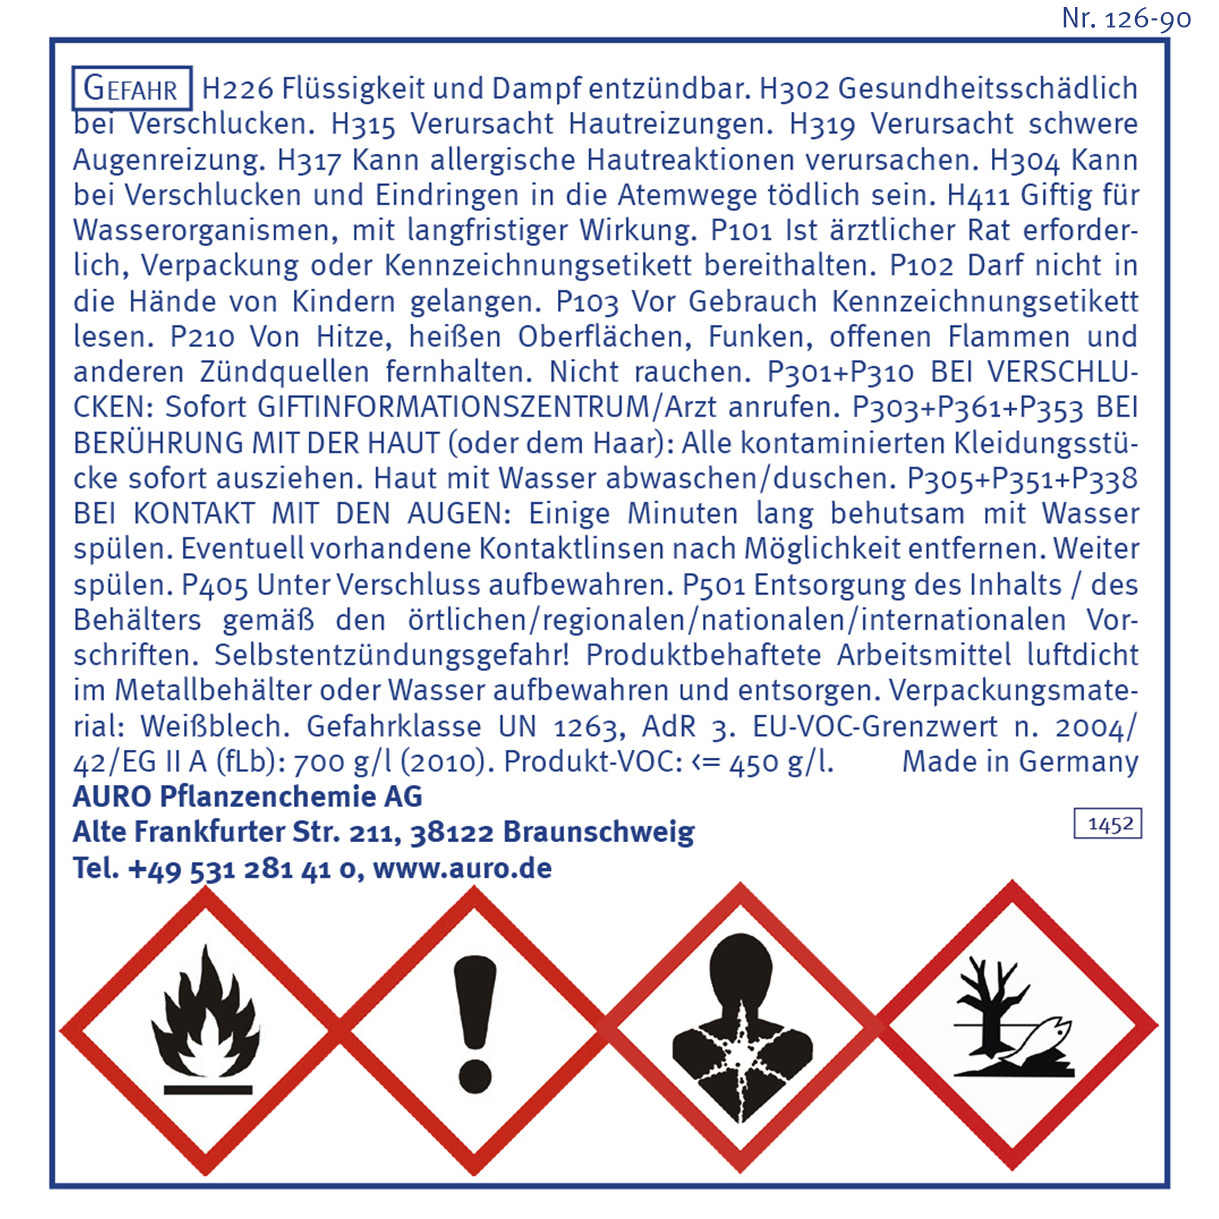 Gefahrengutkennzeichnung, Nr. 126-90